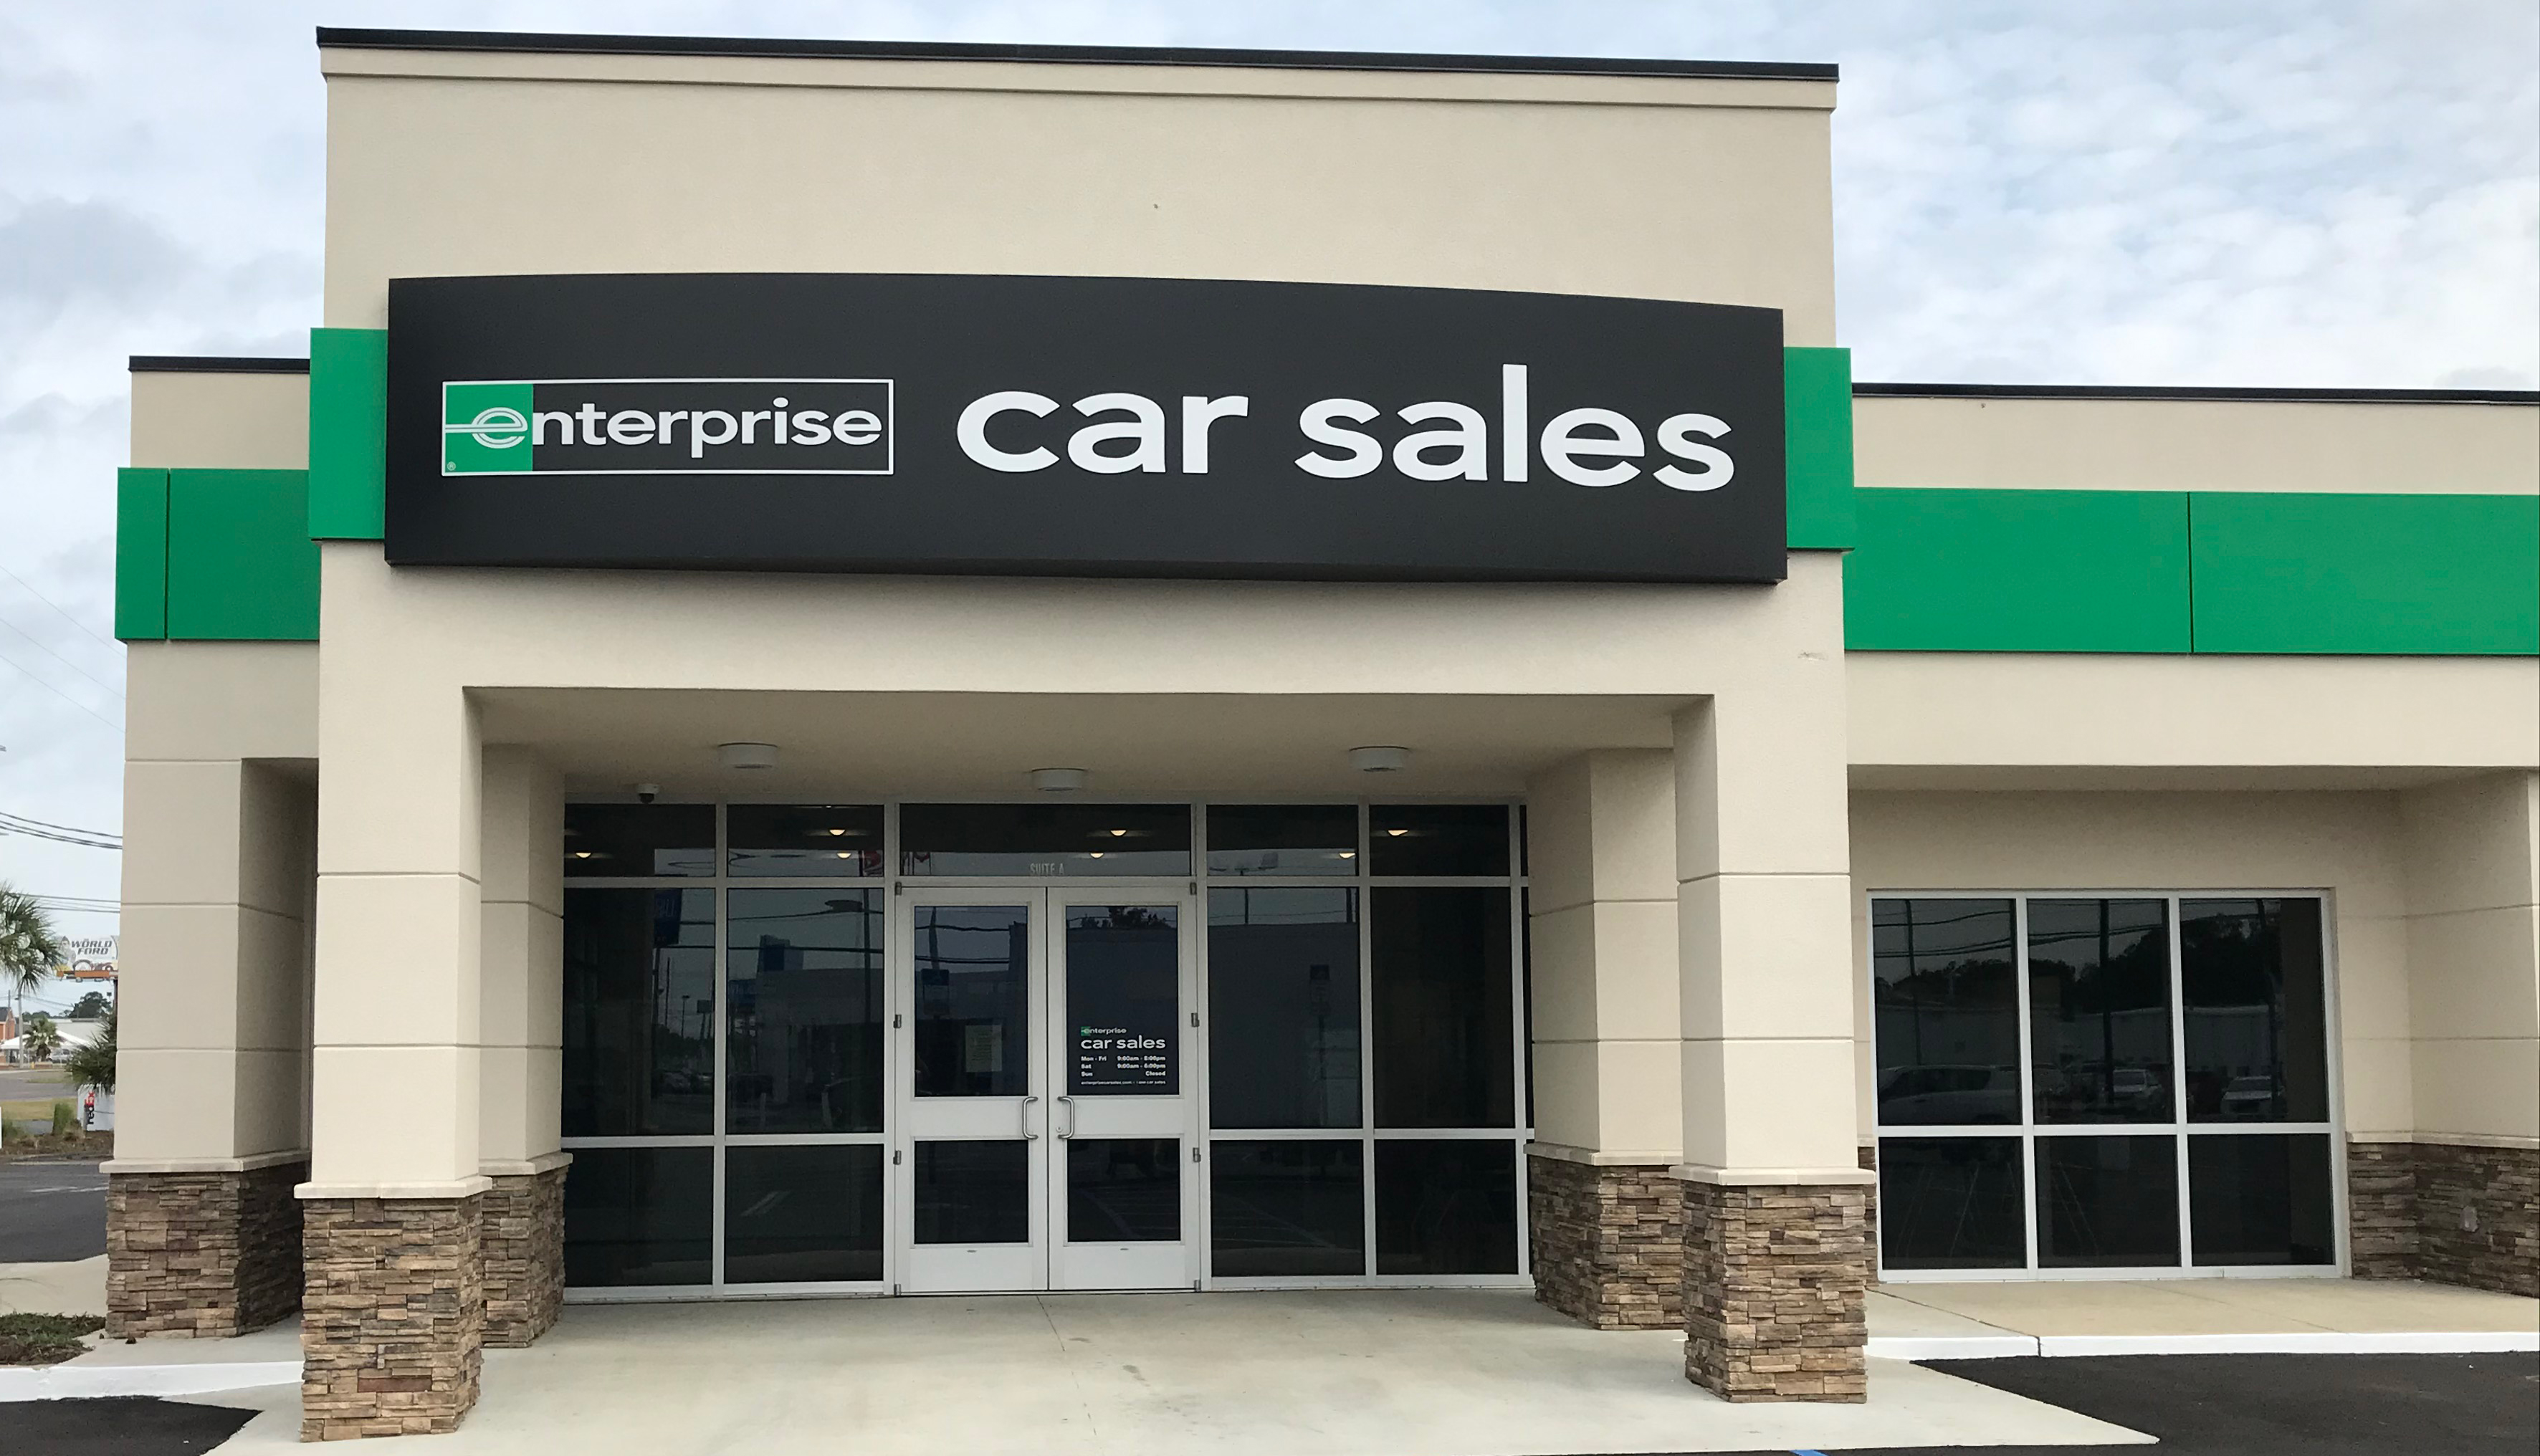 Enterprise Car Sales Teaser Image